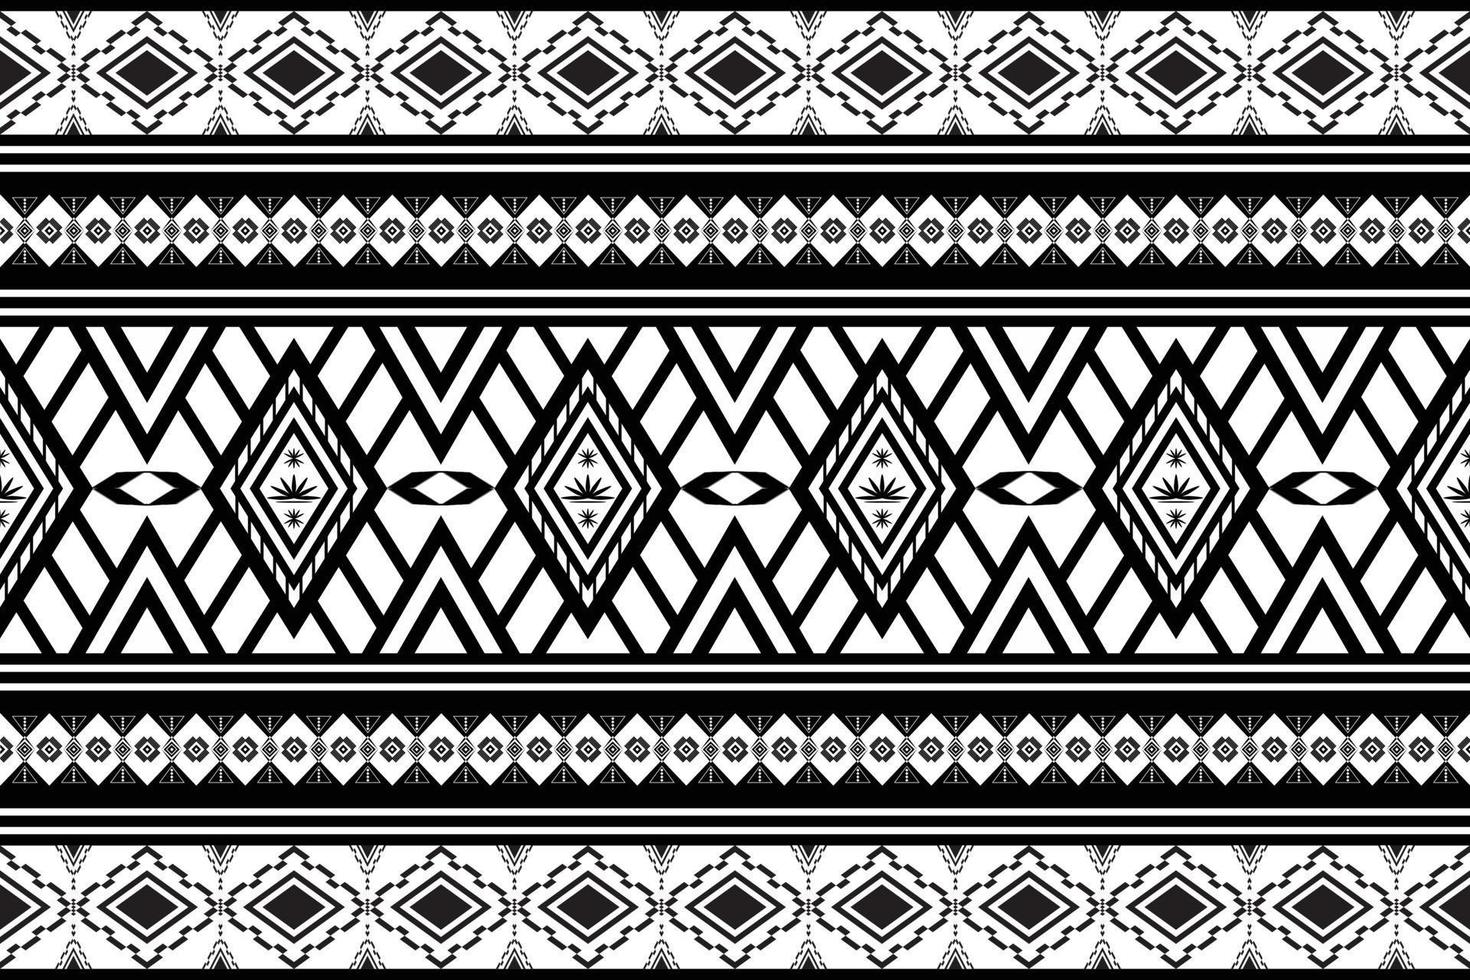 padrão de desenho geométrico tecido étnico oriental tradicional abstrato preto e branco. para estilo de bordado, cortina, fundo, tapete, papel de parede, pano, embrulho, batik, tecido, ilustração vetorial. vetor